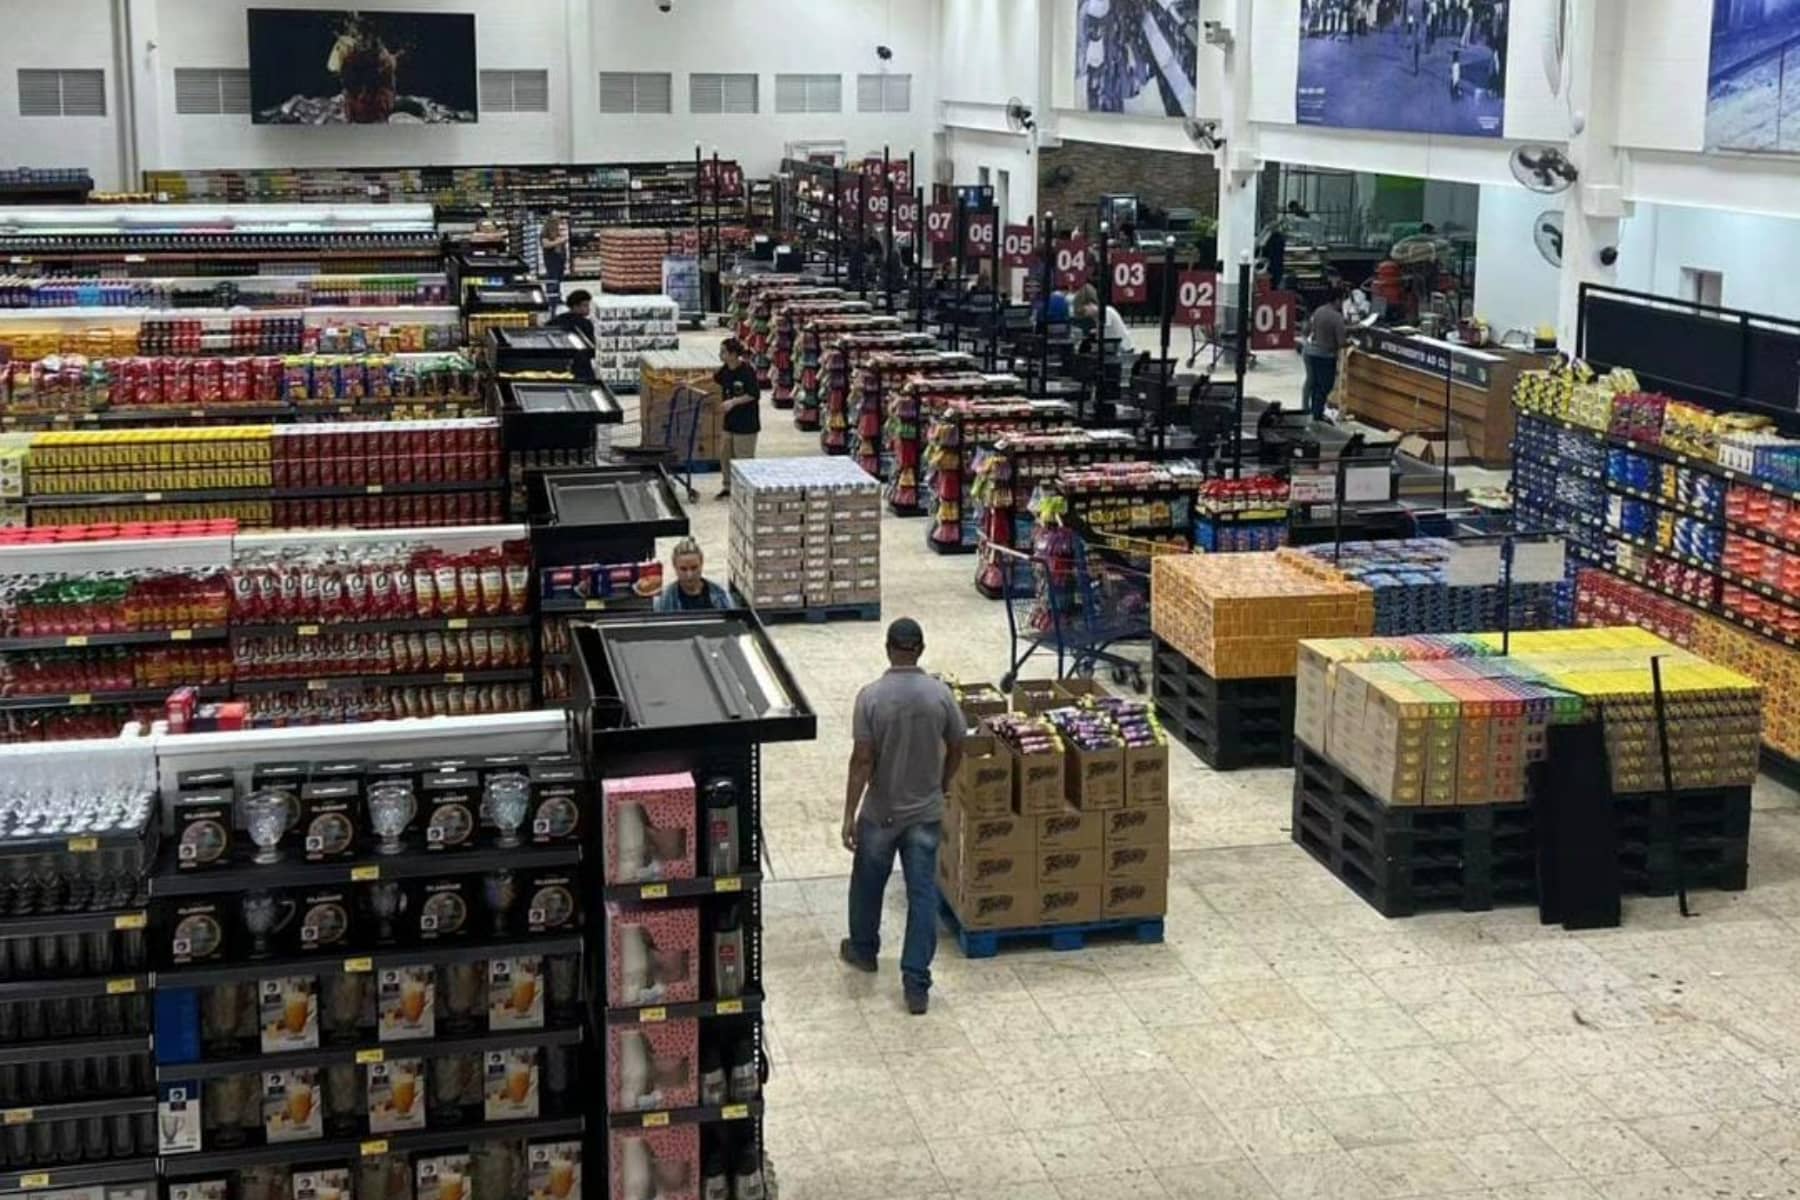 Grupo Bem Barato, que comprou o Pedroso, inaugura supermercado em Cotia  nesta quarta